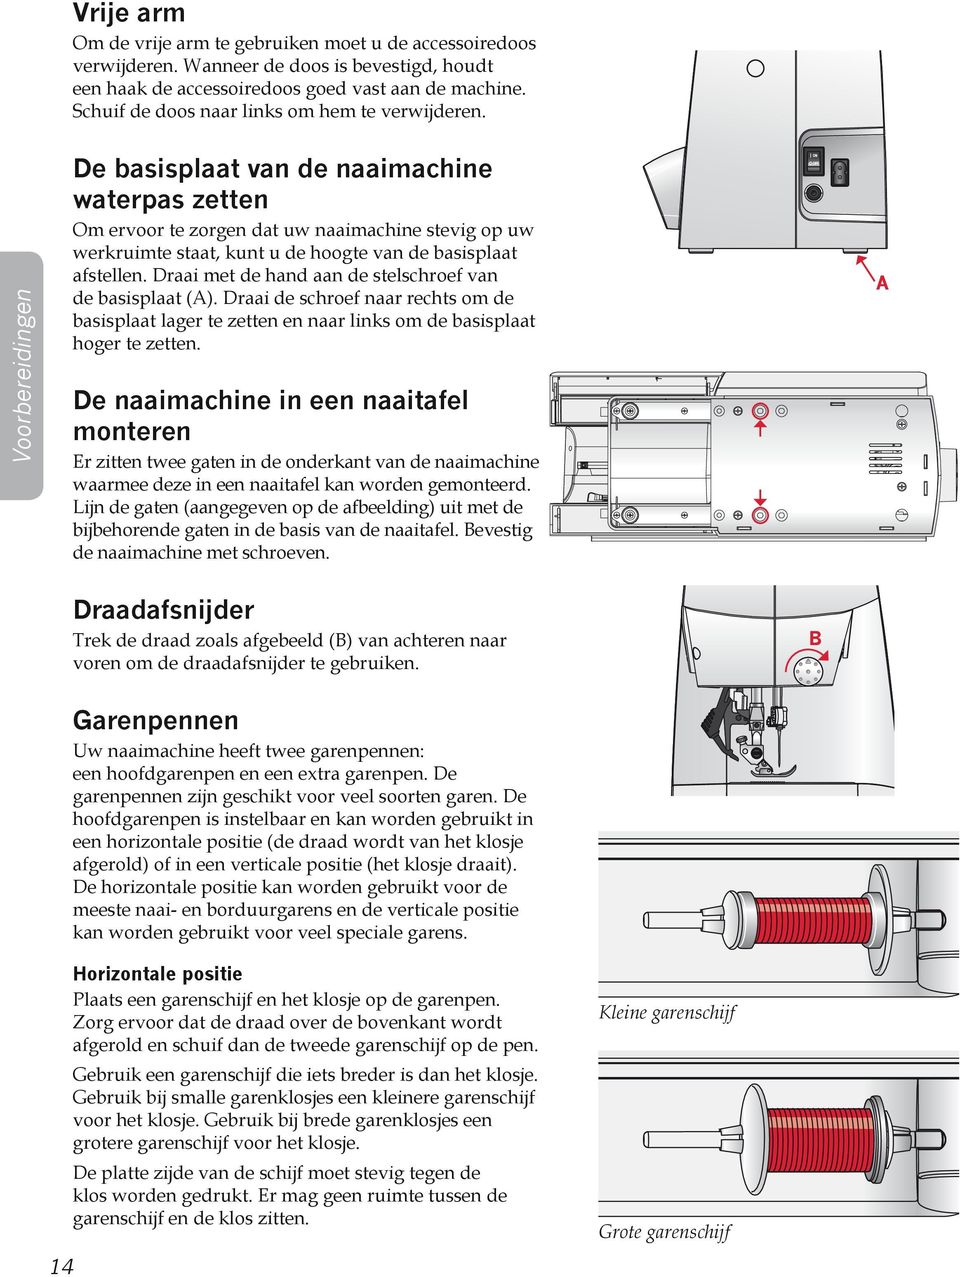 Voorbereidingen De basisplaat van de naaimachine waterpas zetten Om ervoor te zorgen dat uw naaimachine stevig op uw werkruimte staat, kunt u de hoogte van de basisplaat afstellen.